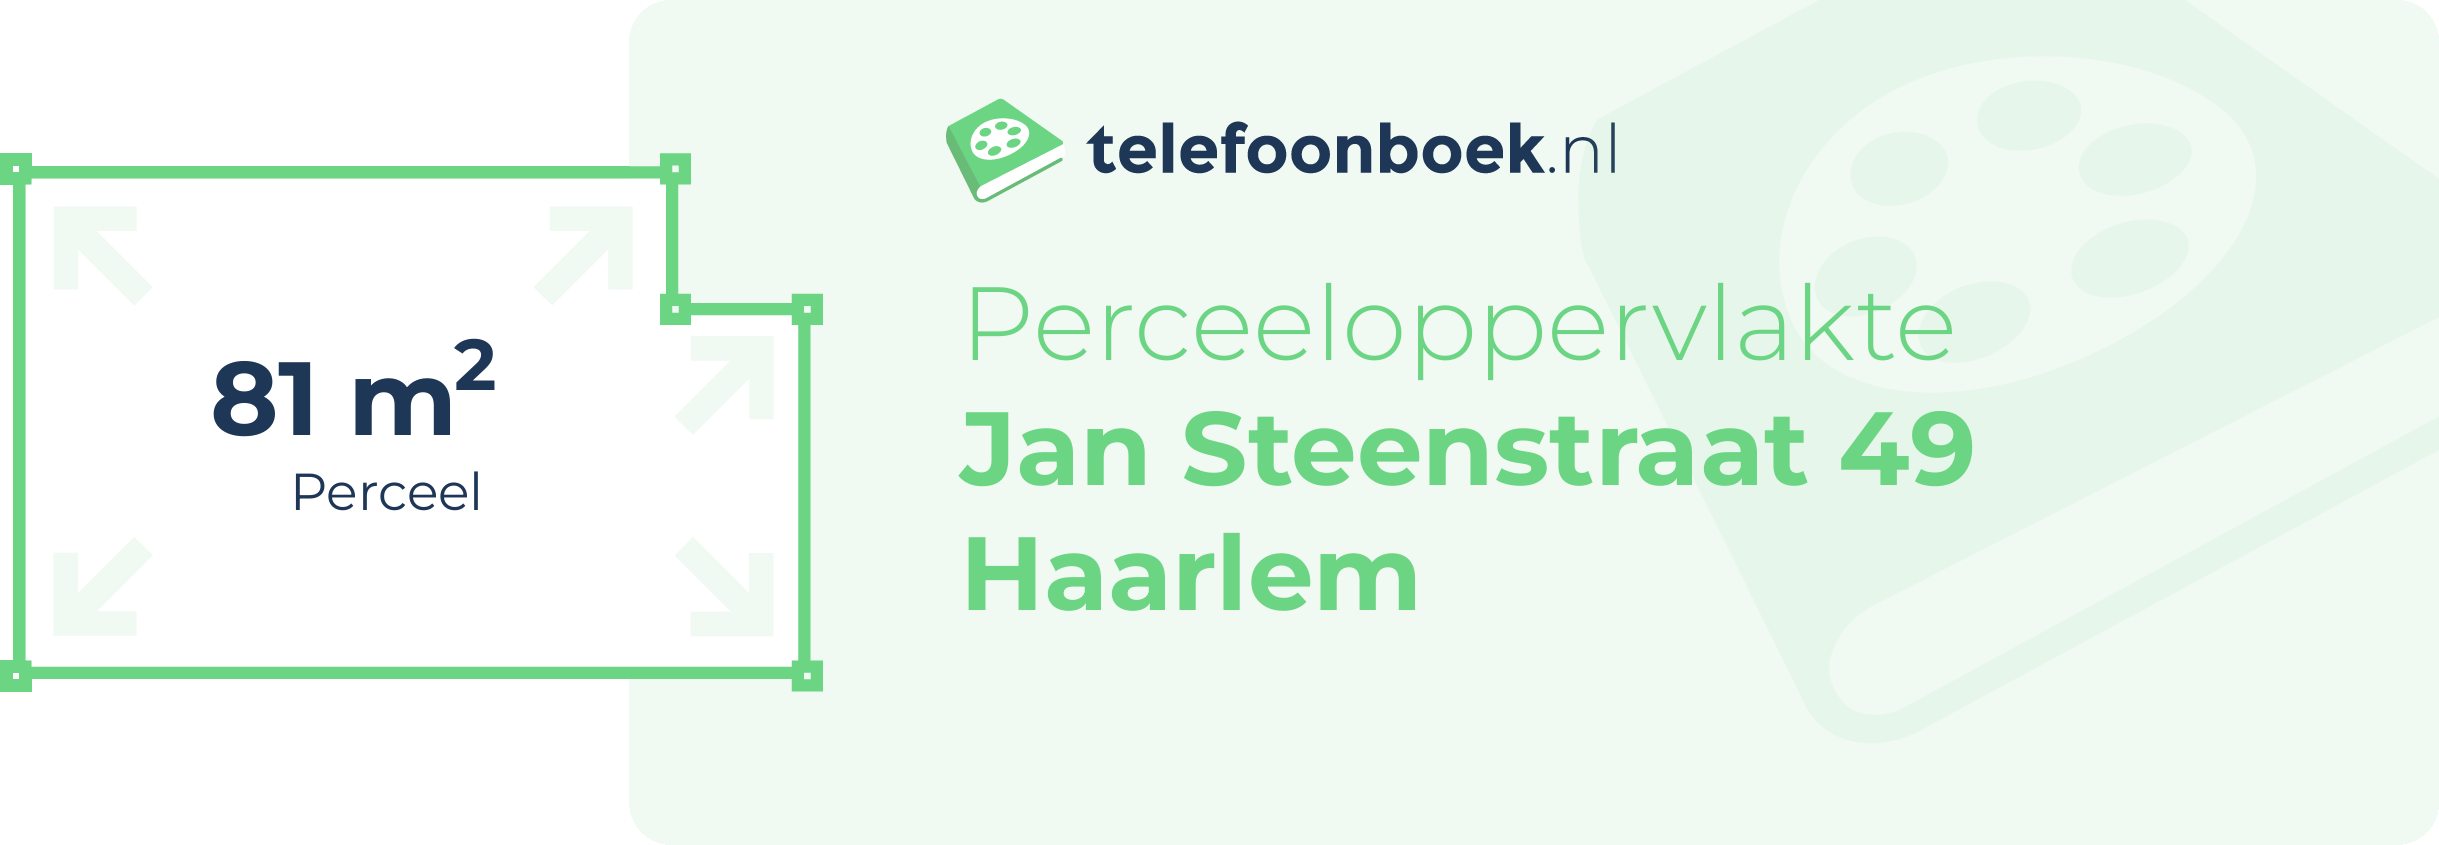 Perceeloppervlakte Jan Steenstraat 49 Haarlem